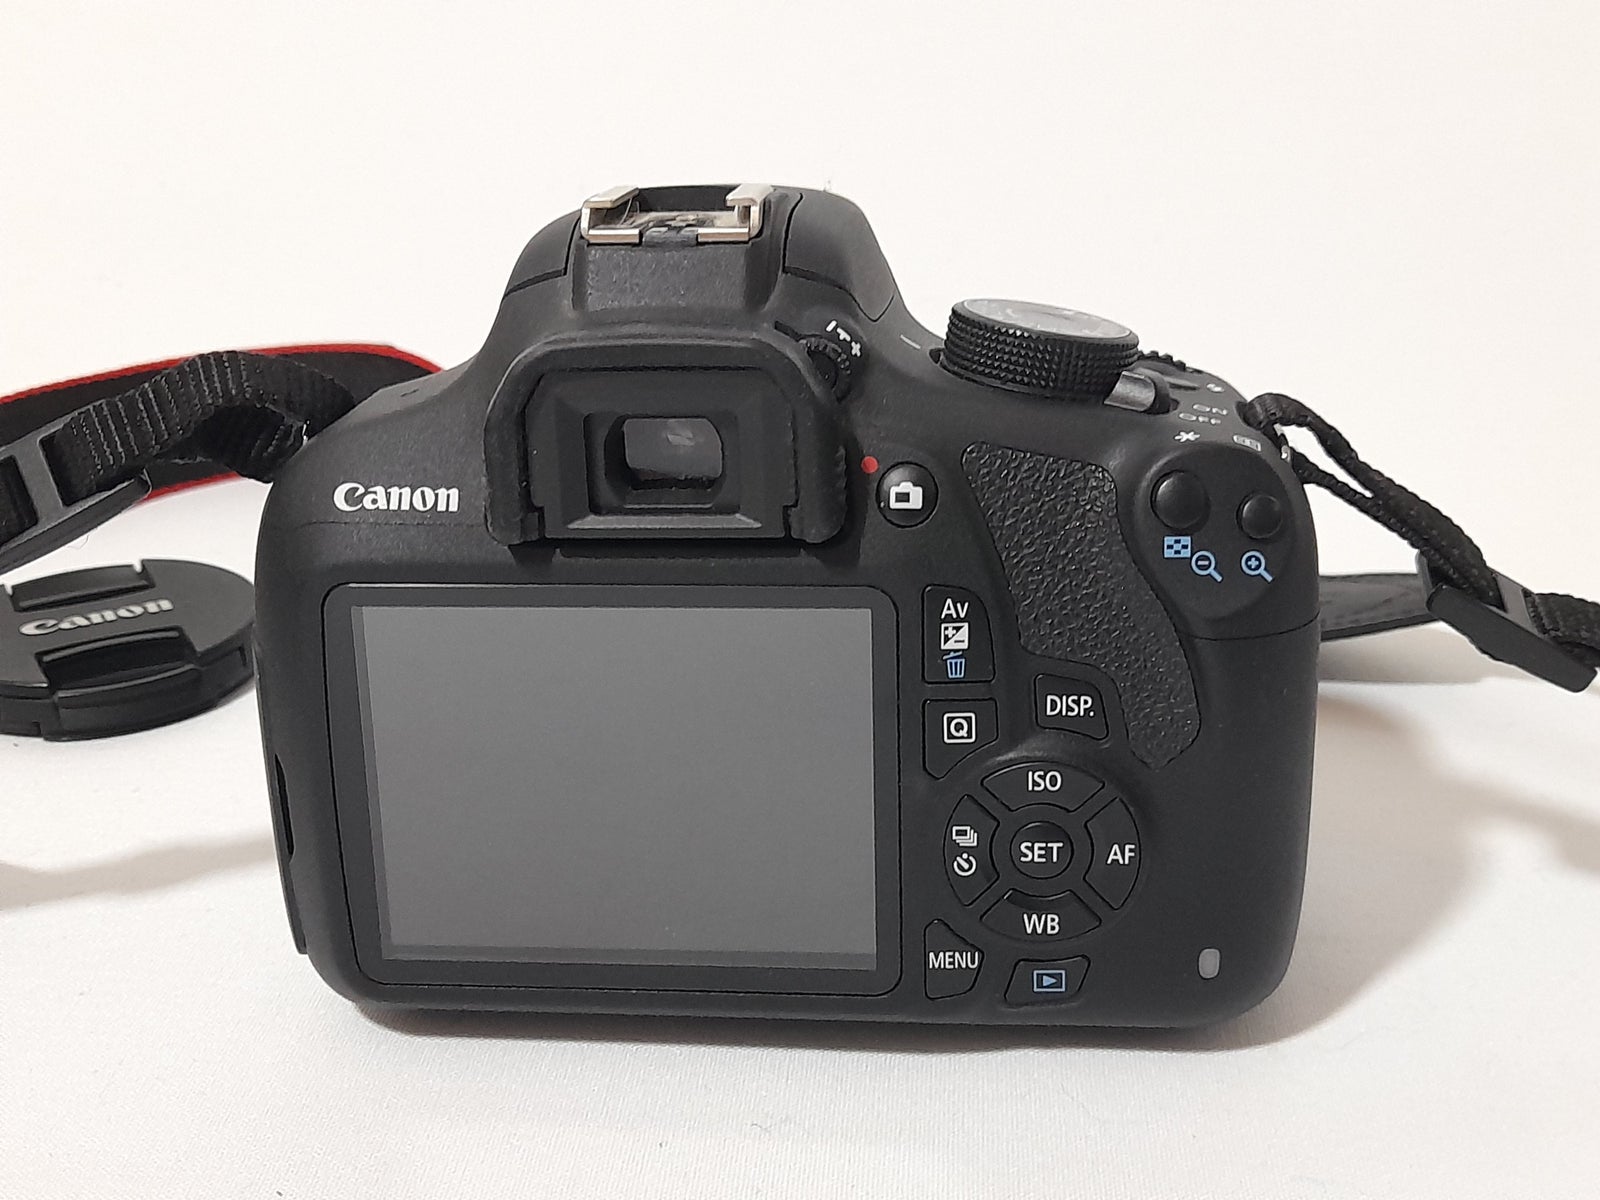 Canon, EOS 1200D, 18 megapixels